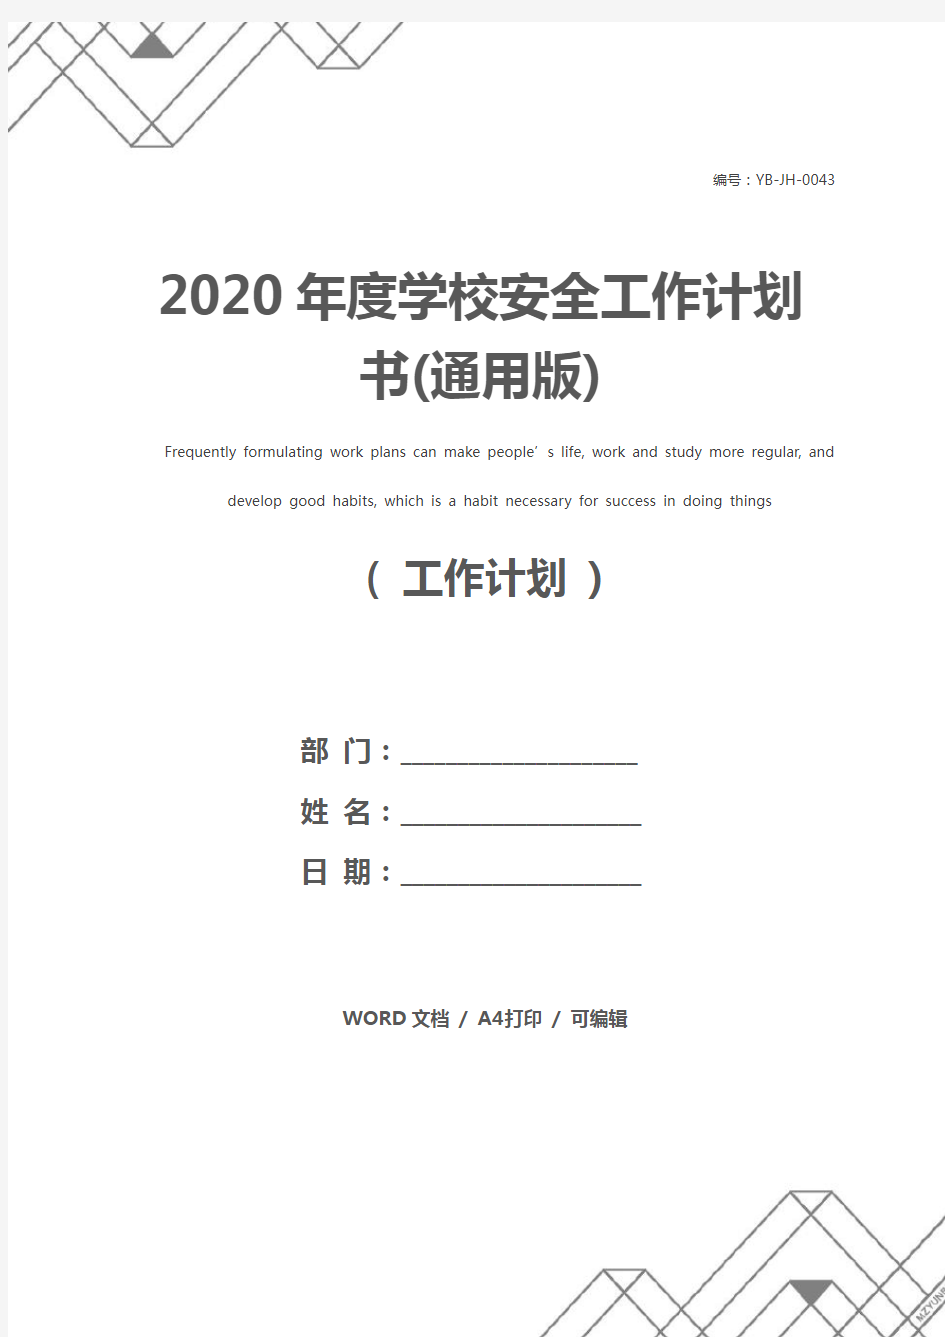 2020年度学校安全工作计划书(通用版)